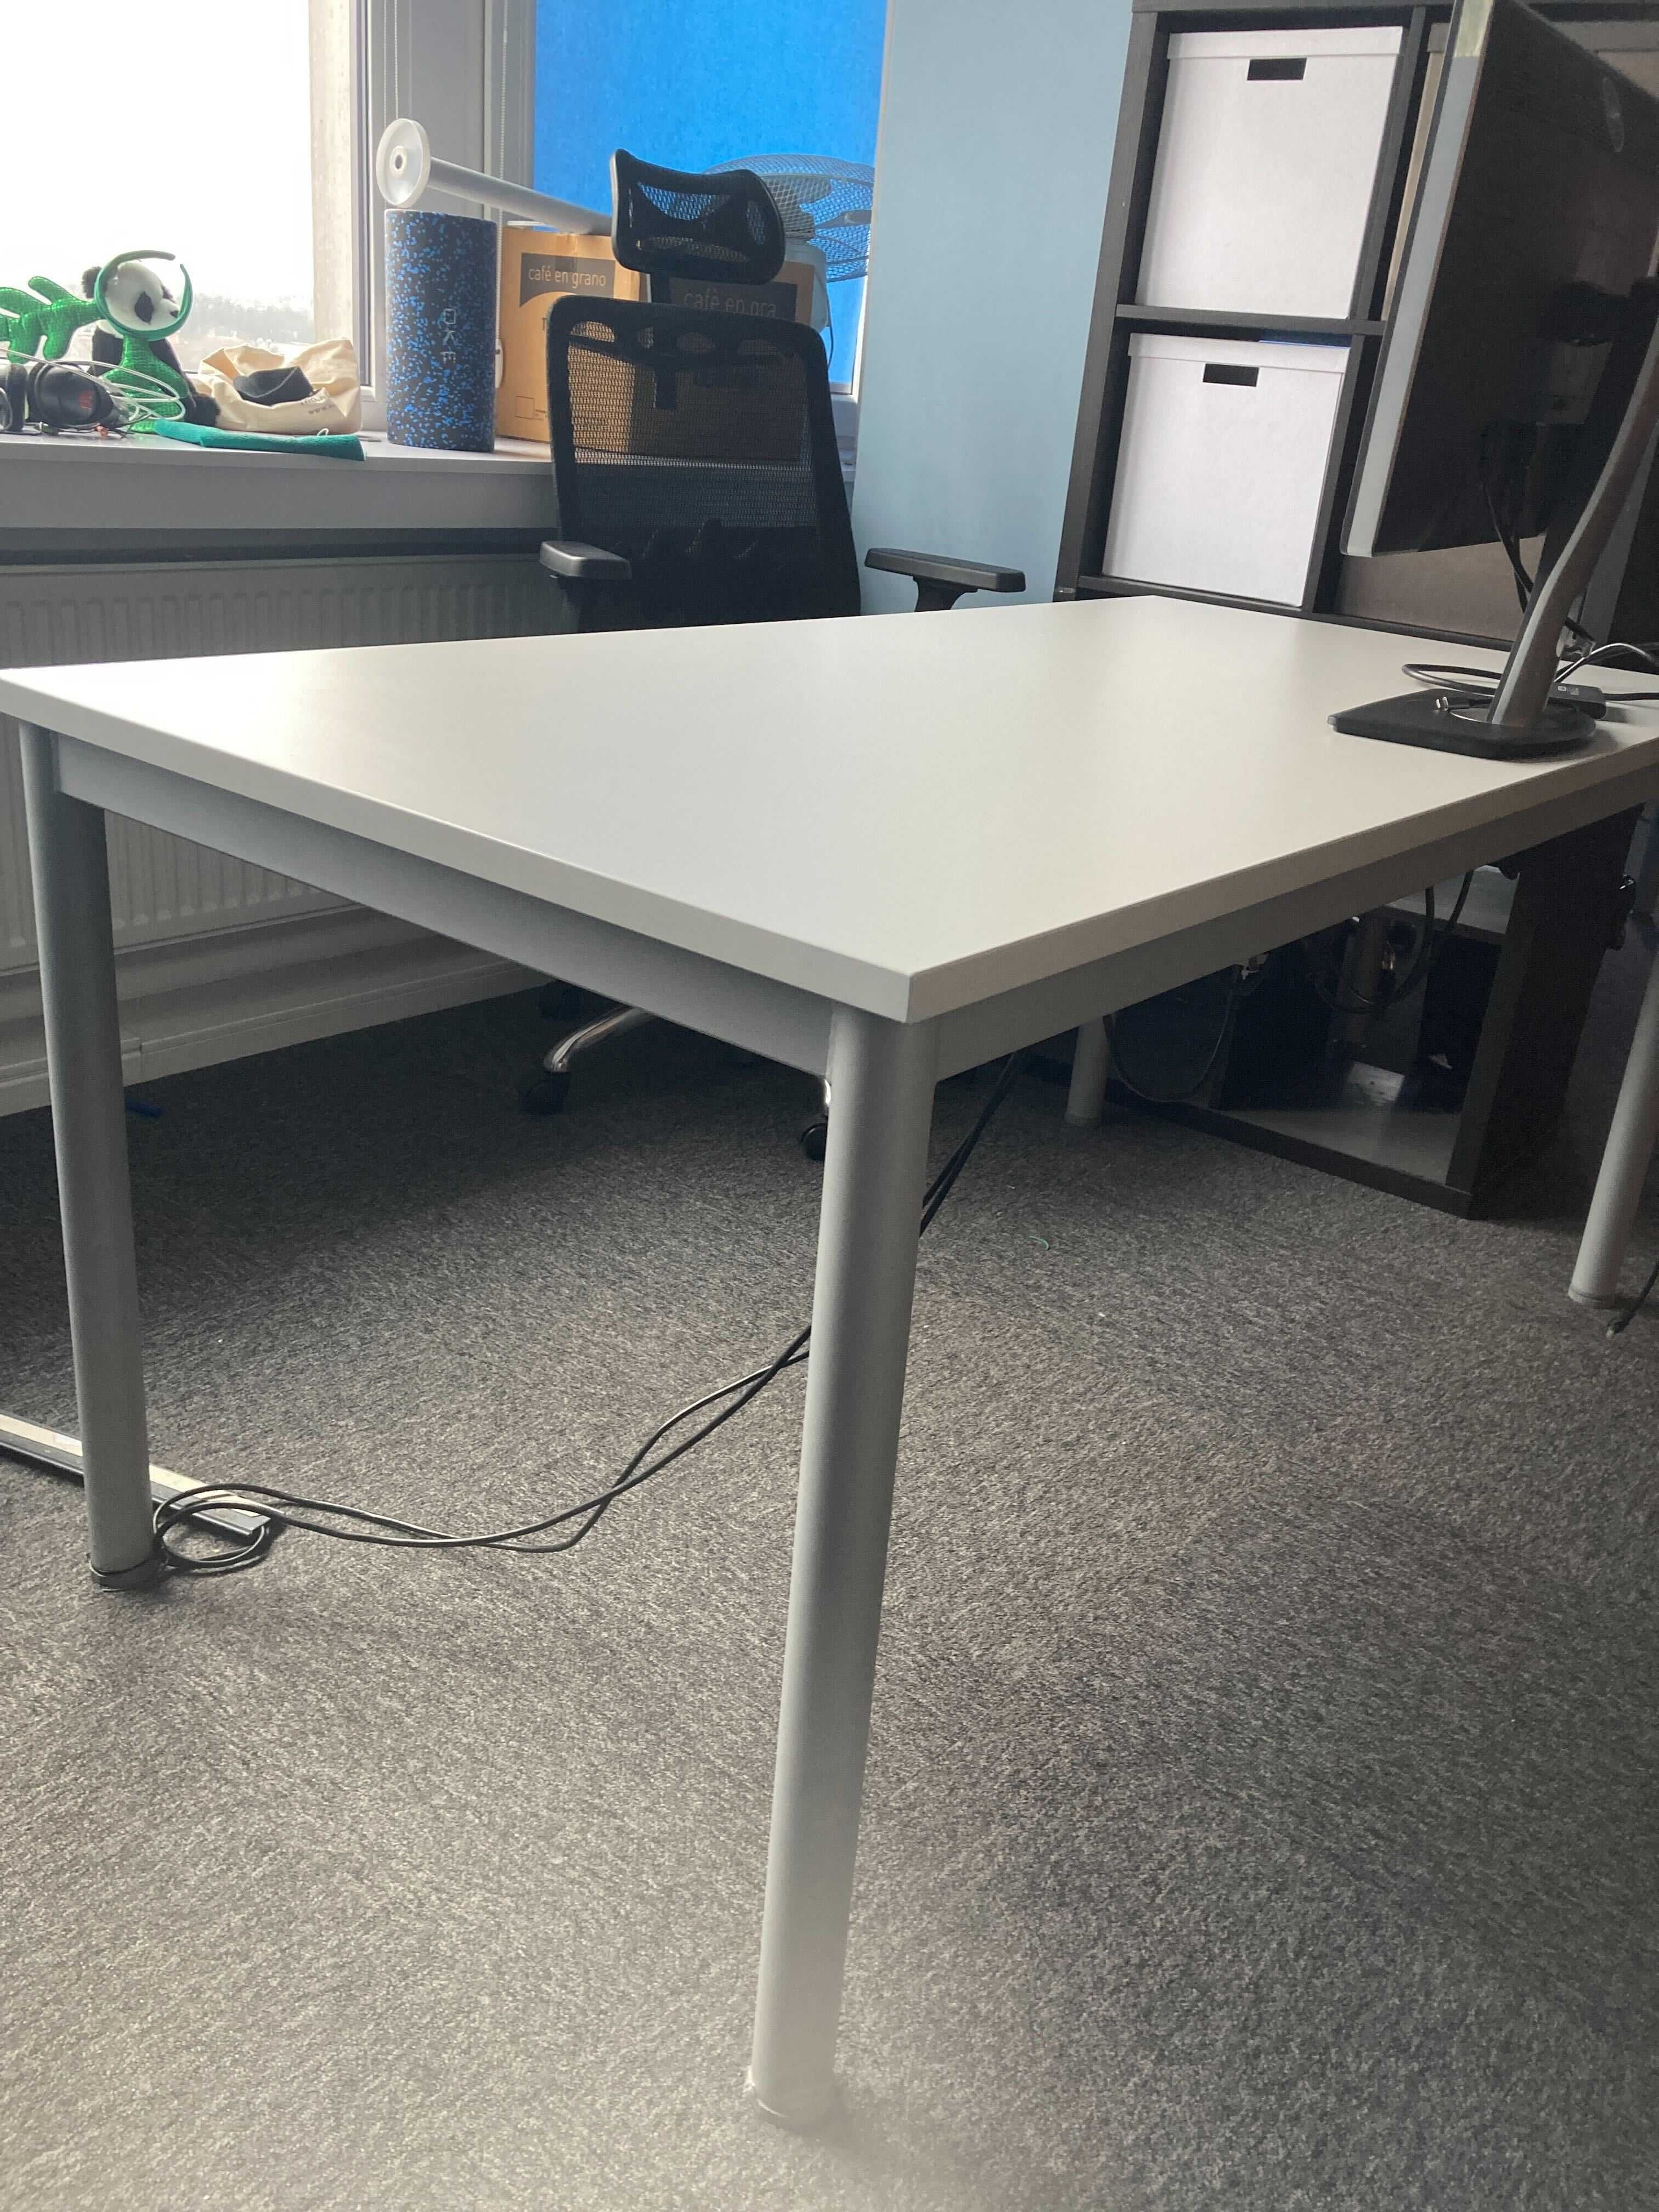 Solidne metalowe biurko, dobre do przestrzeni biurowej, szare